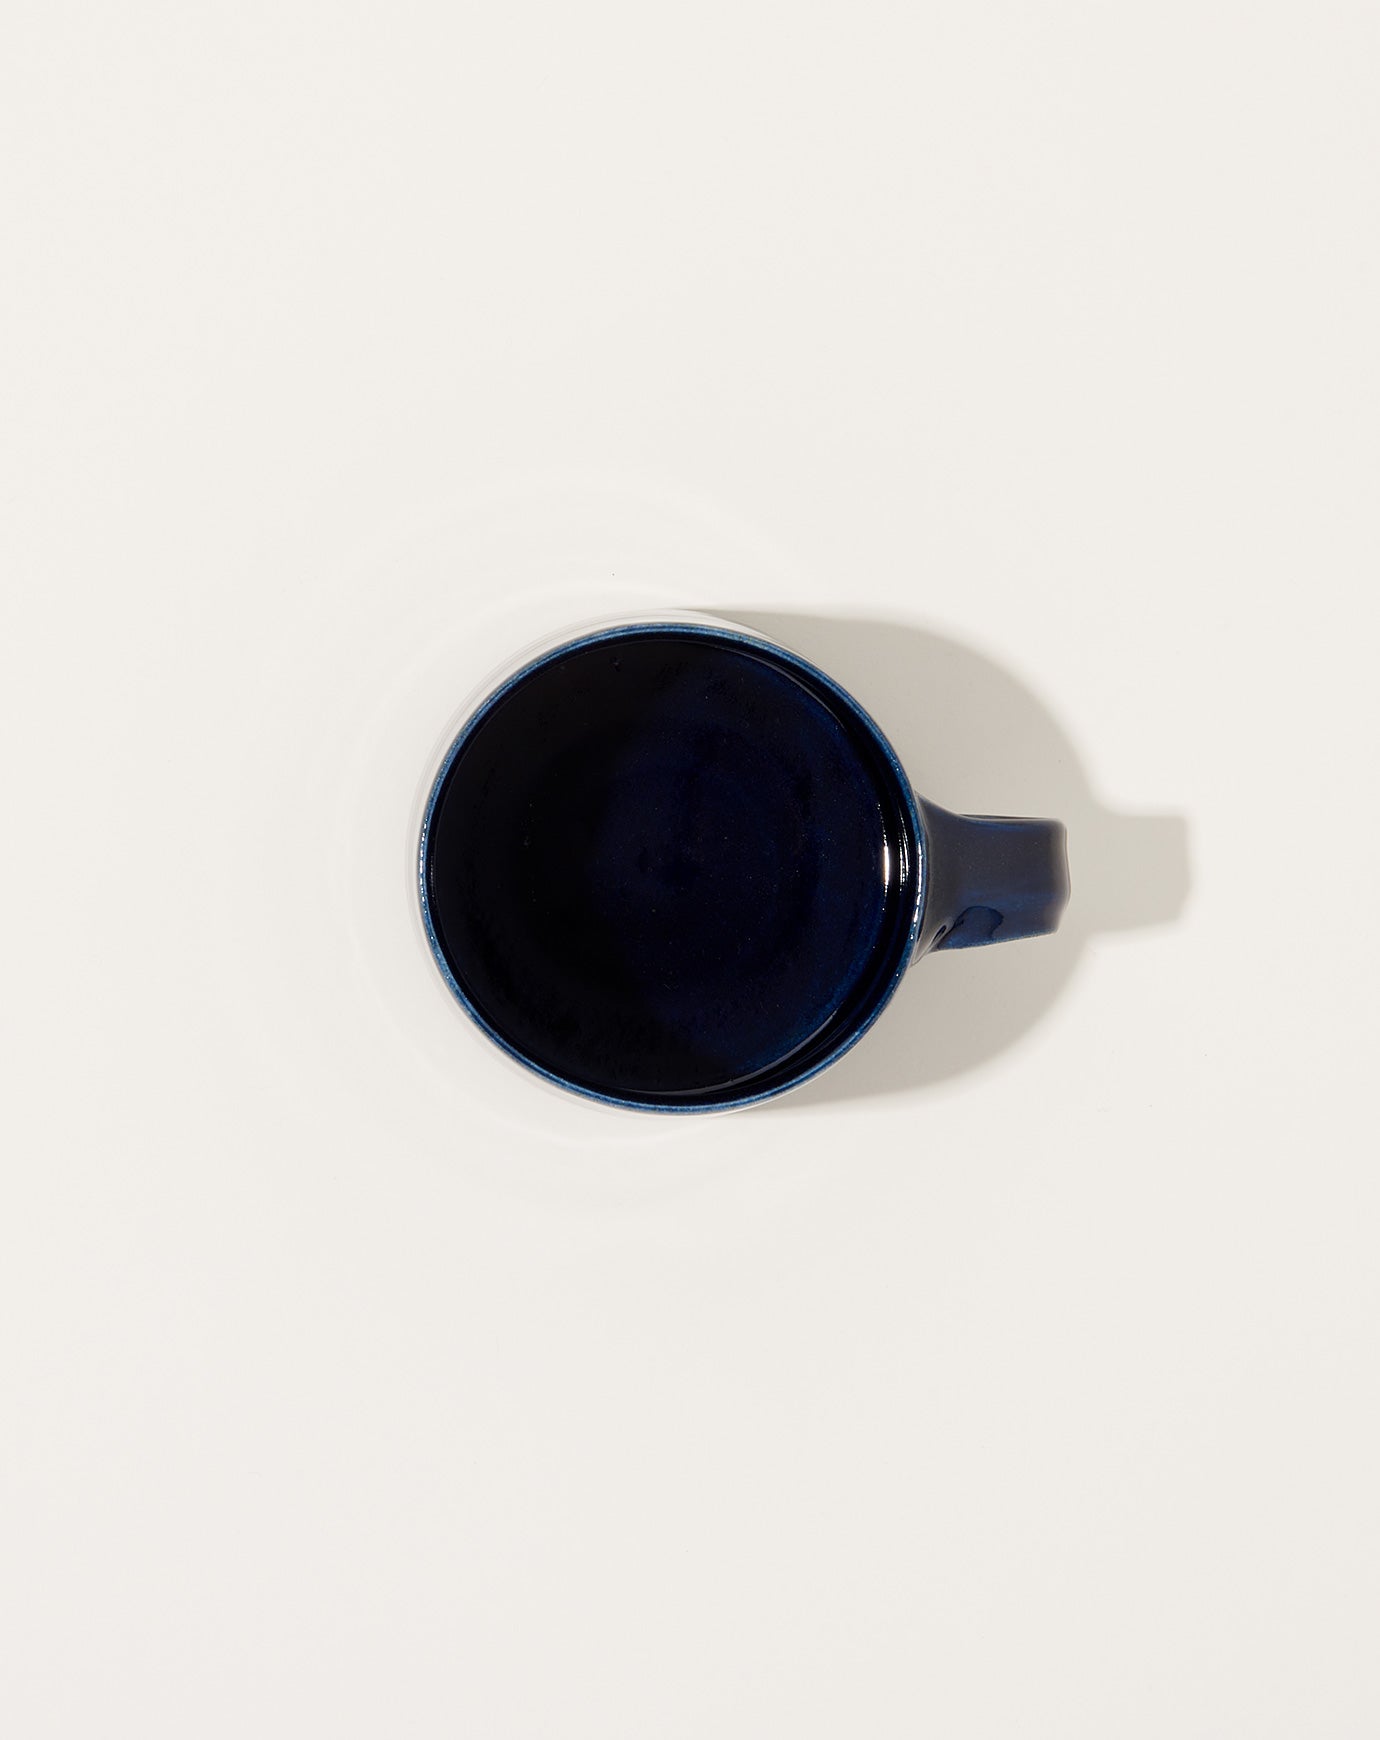 Monohanako Mug in Dark Blue